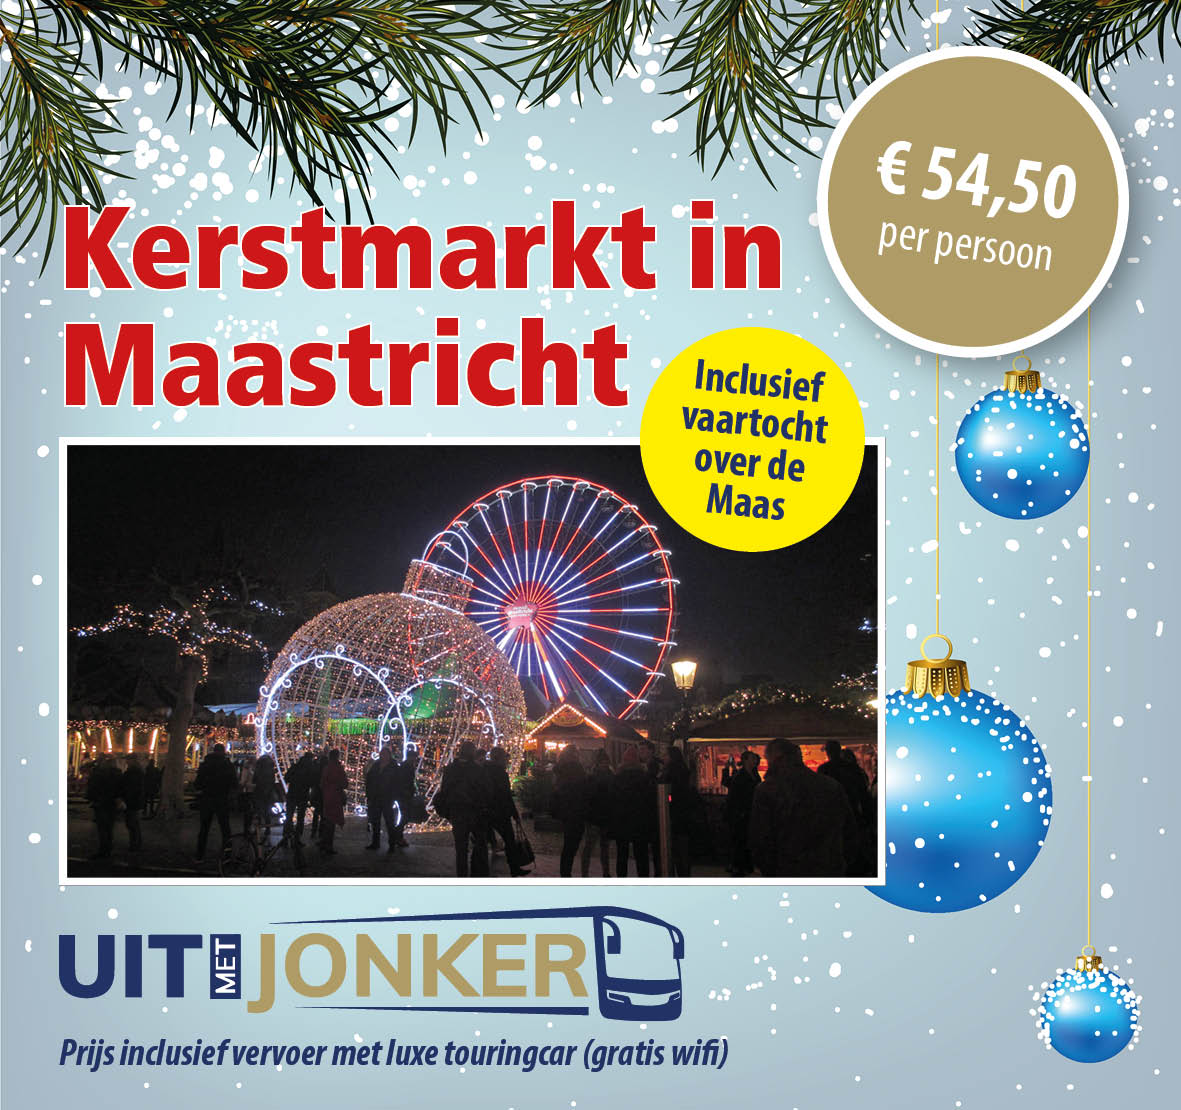 Dagtocht Kerstmarkt Maastricht